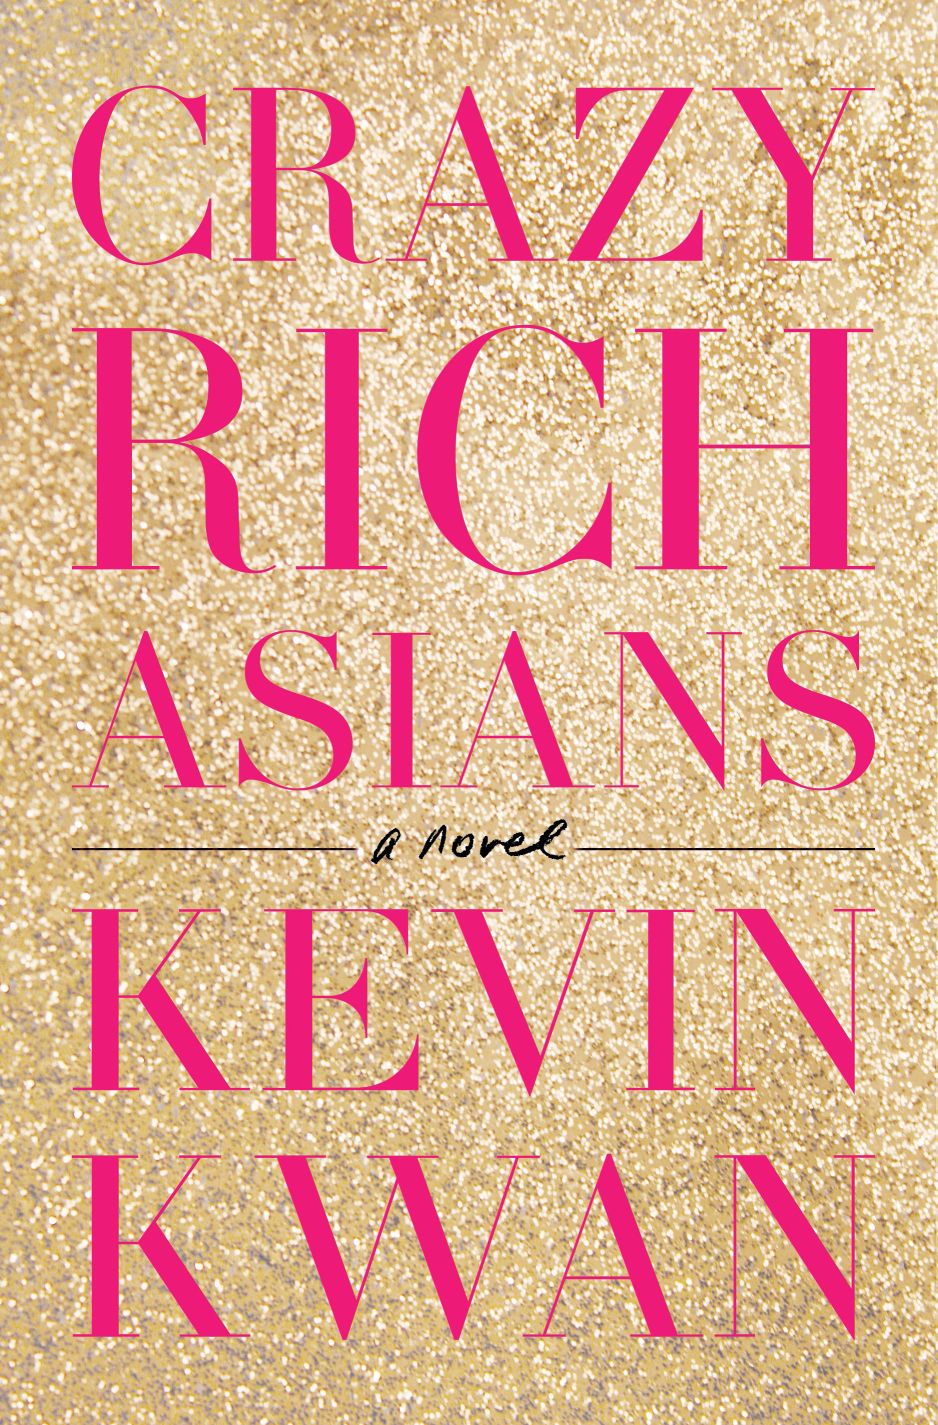 crazy rich asians book 2